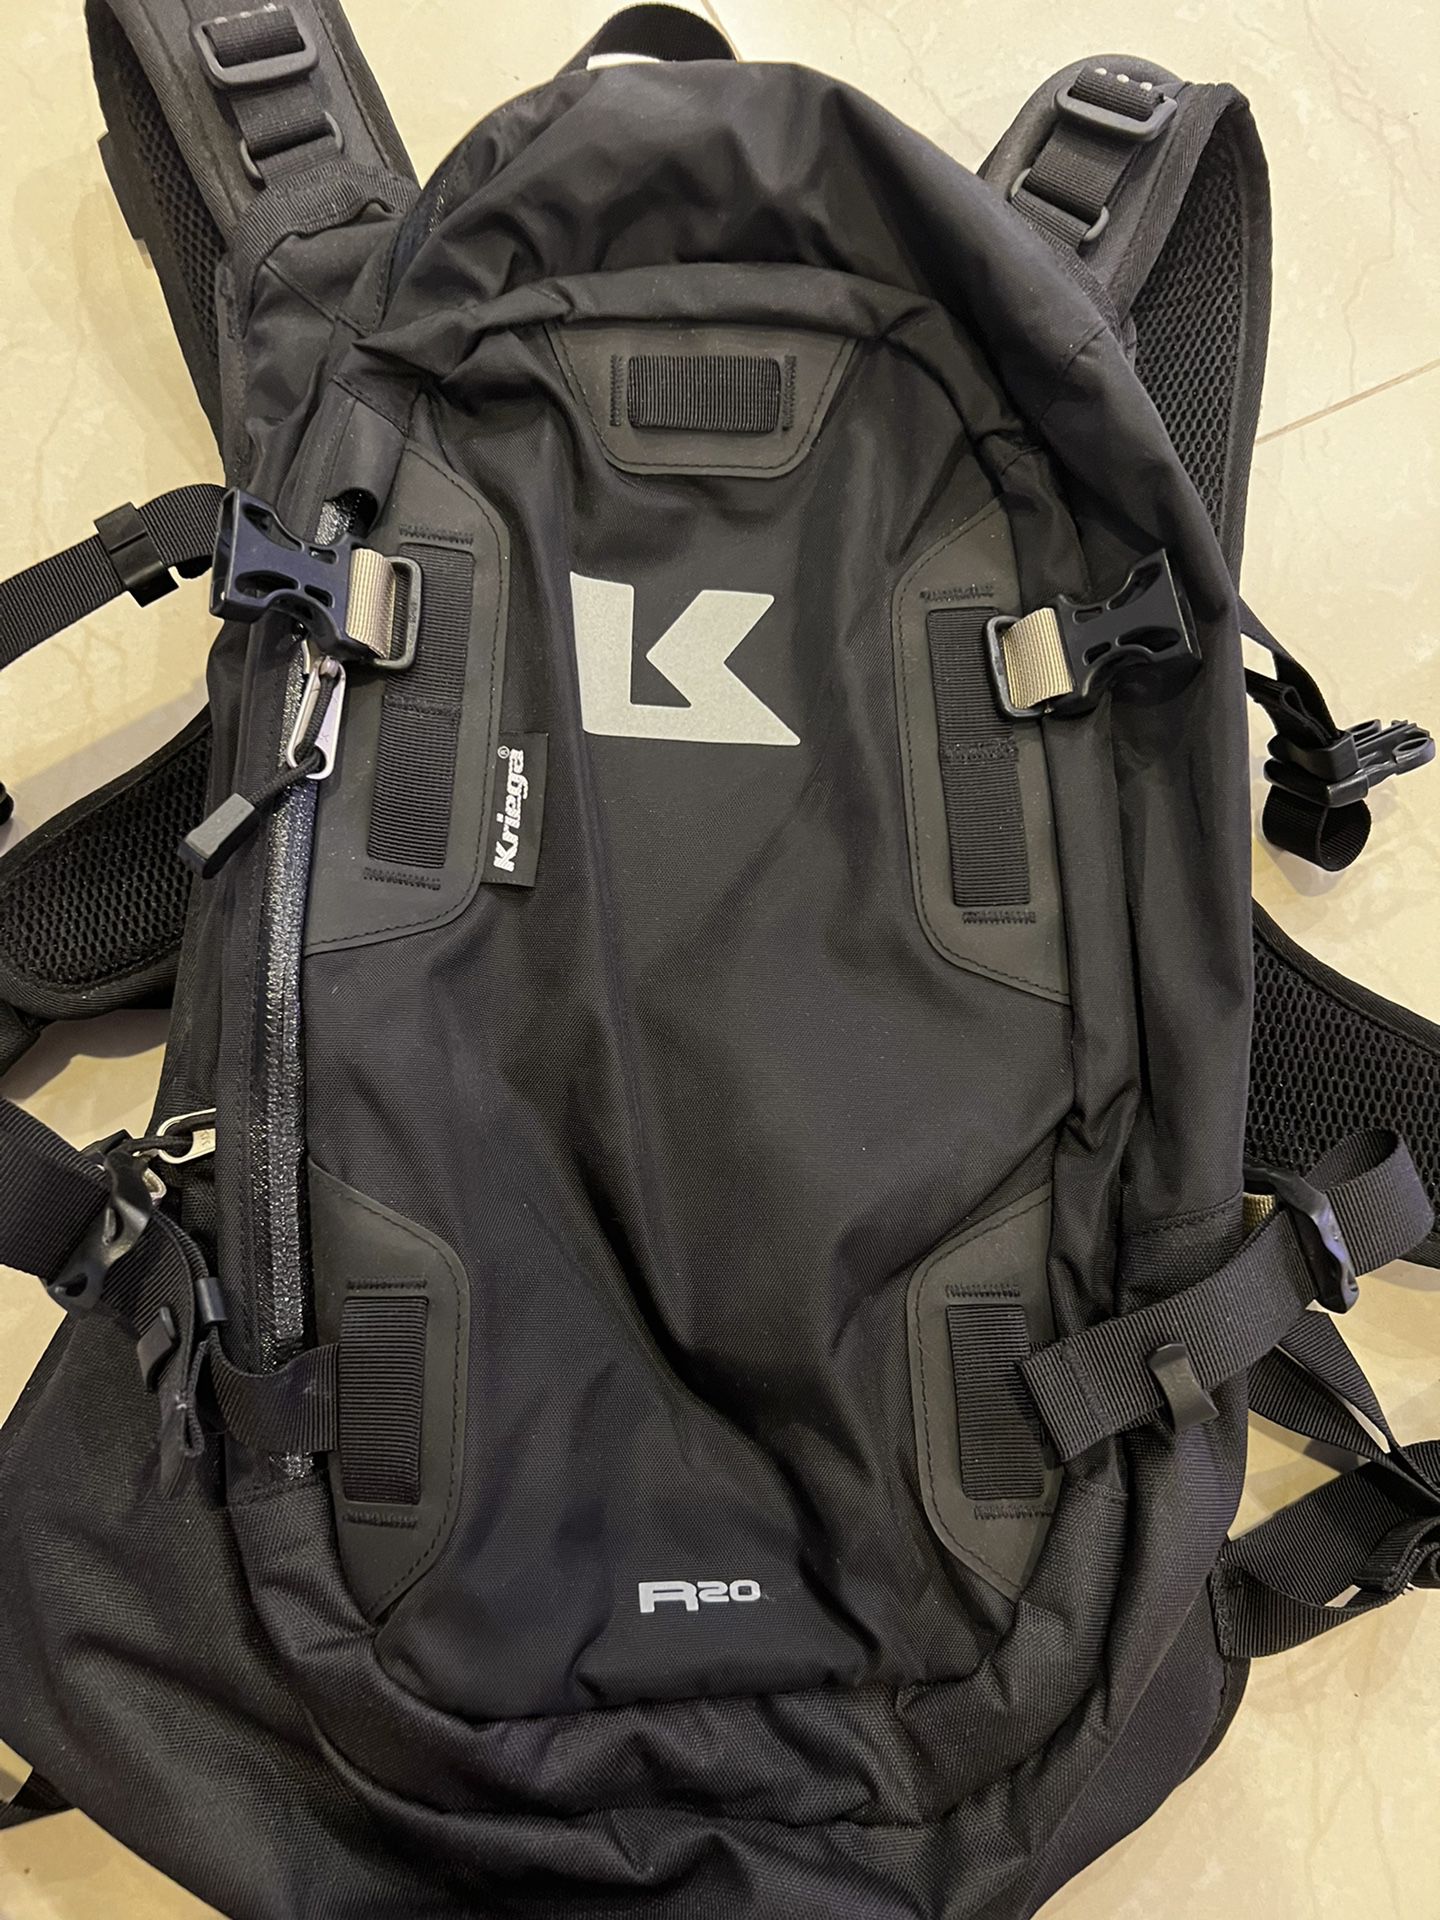 Kriega R20 Motorcycle/Riding Backpack